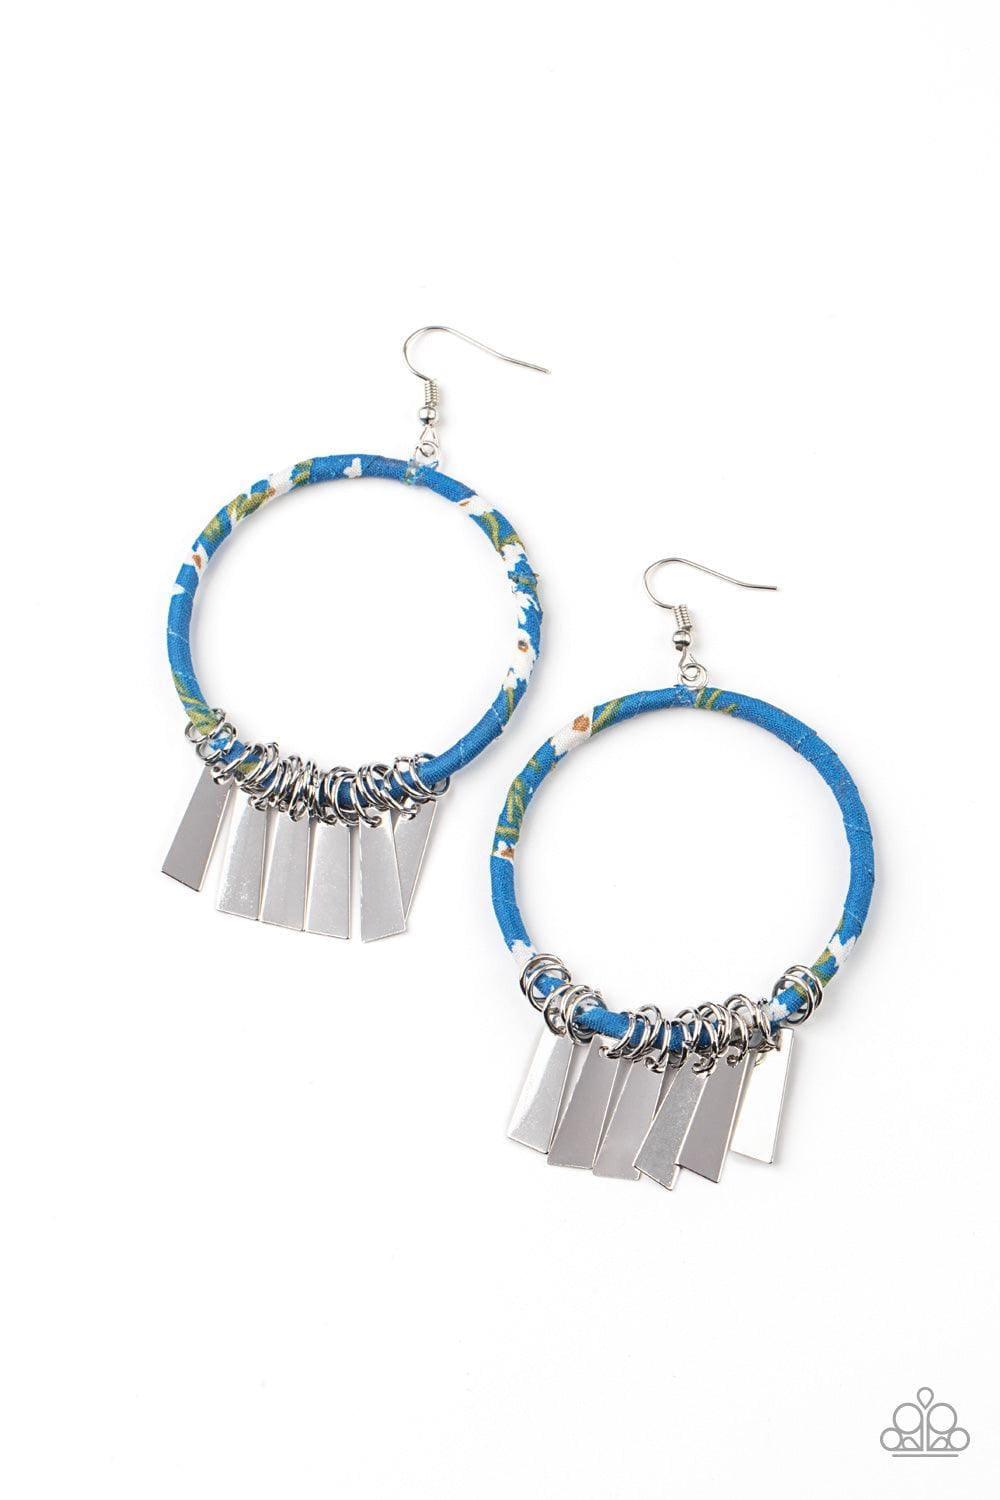 Paparazzi Accessories - Garden Chimes - Blue Earrings - Bling by JessieK